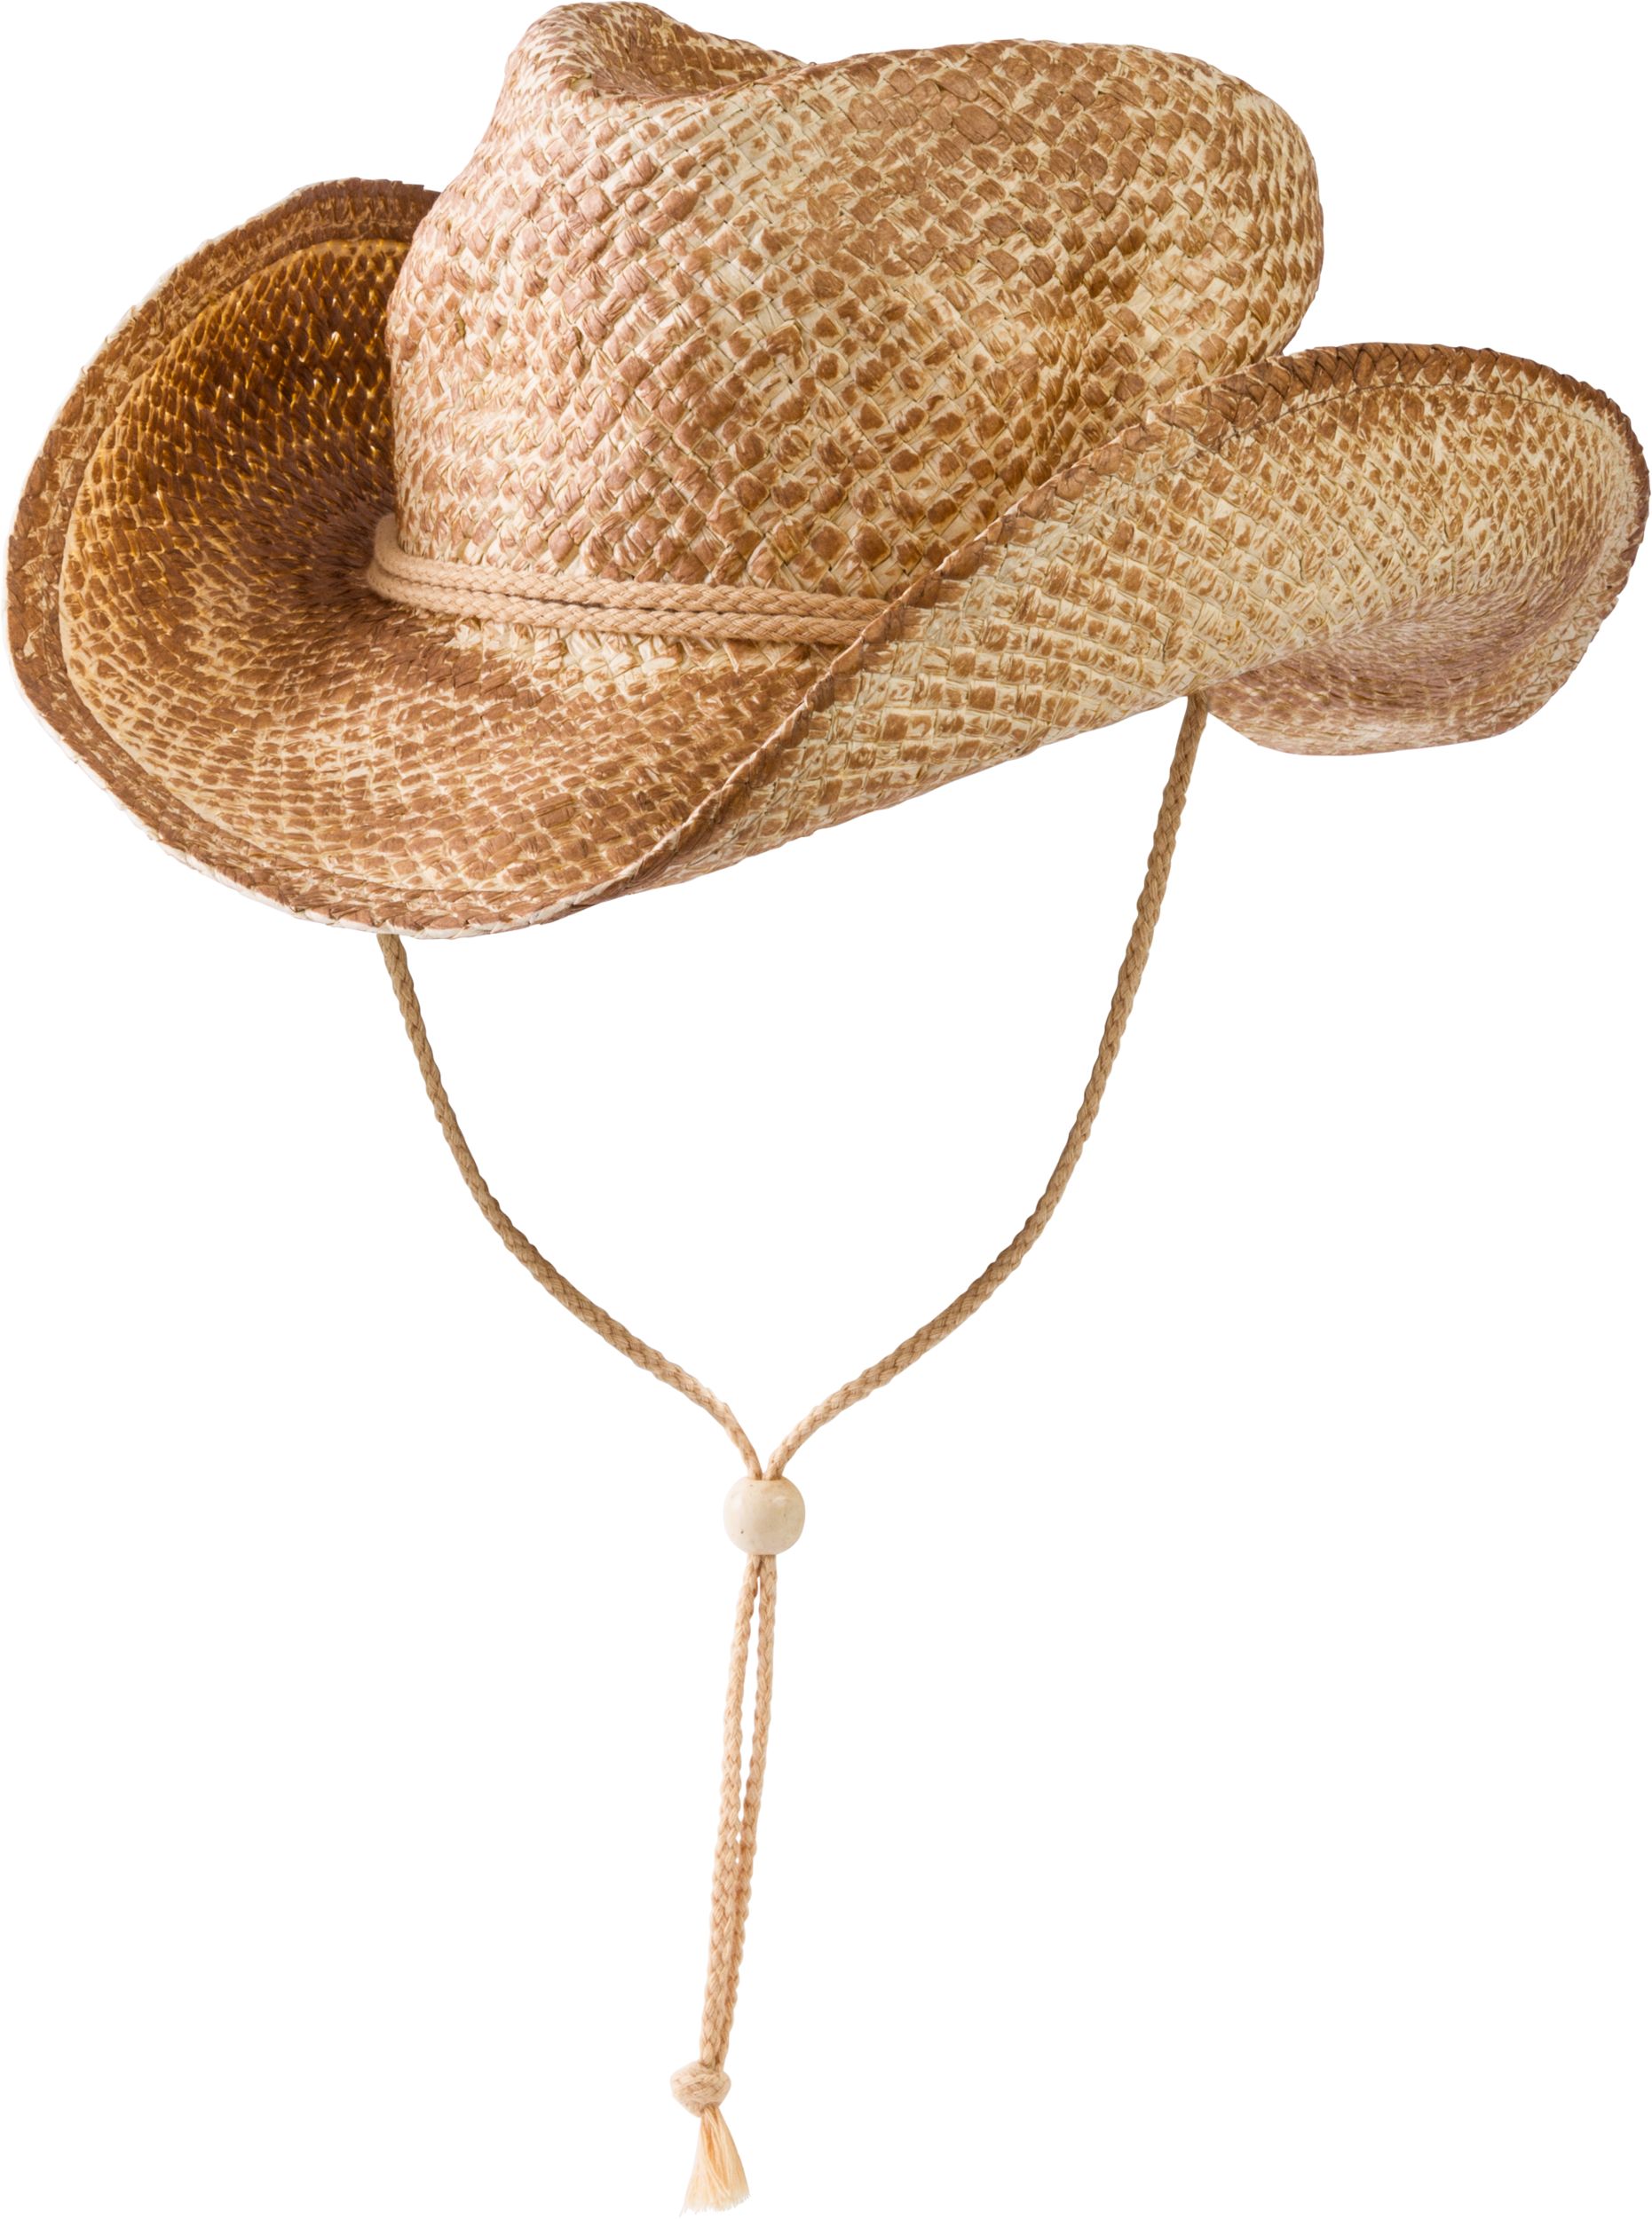 Chapeau de paille de cowboy western, beige, taille unique, accessoire de  costume à porter pour l'Halloween